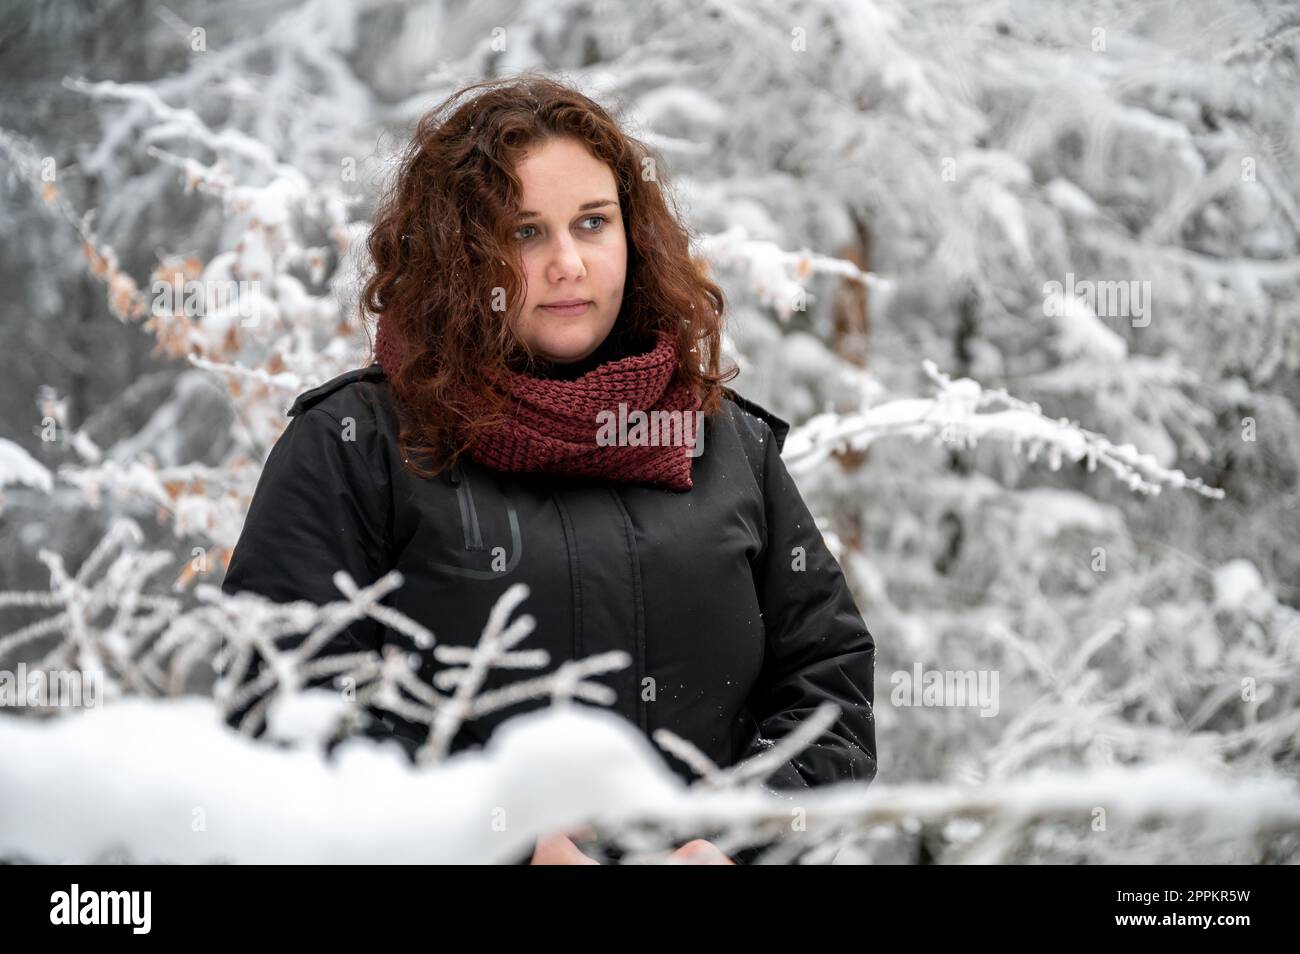 Eine junge Frau mit braunem lockigem Haar und durchdachtem Gesichtsausdruck steht im Winter inmitten eines verschneiten Waldes Stockfoto